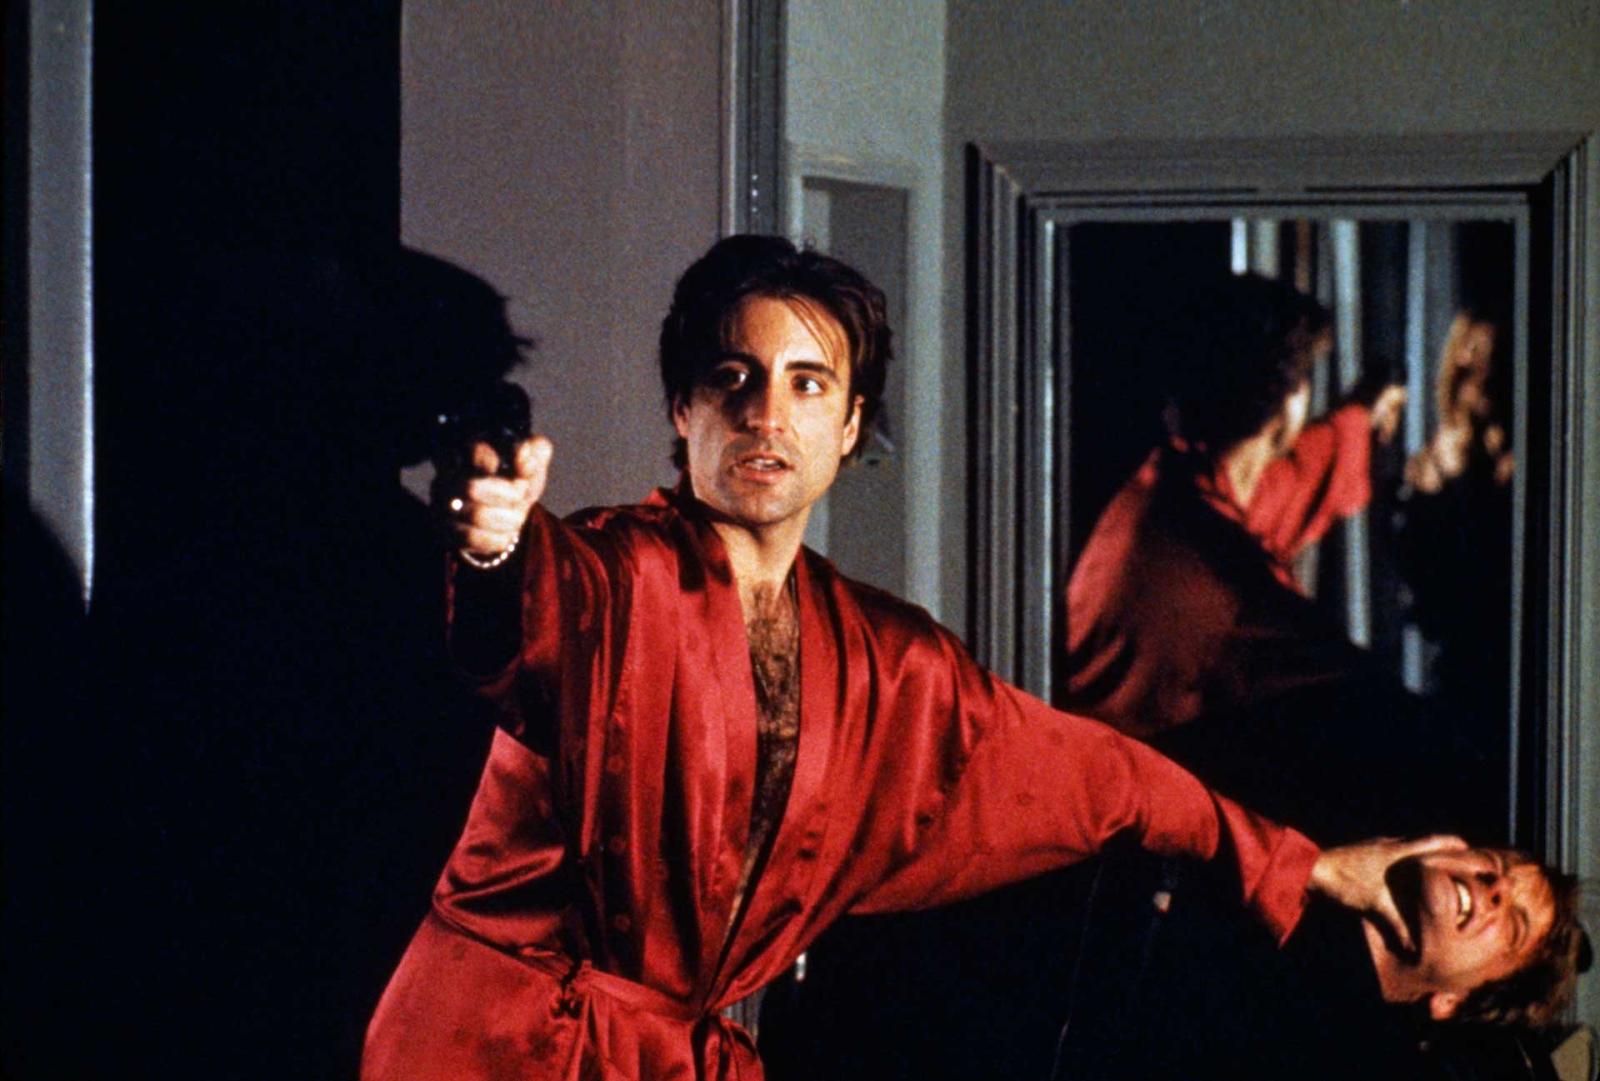 Il Padrino Coda - La Morte di Michael Corleone - Blu-ray 4K UHD + Blu-ray (Blu-ray) Image 8